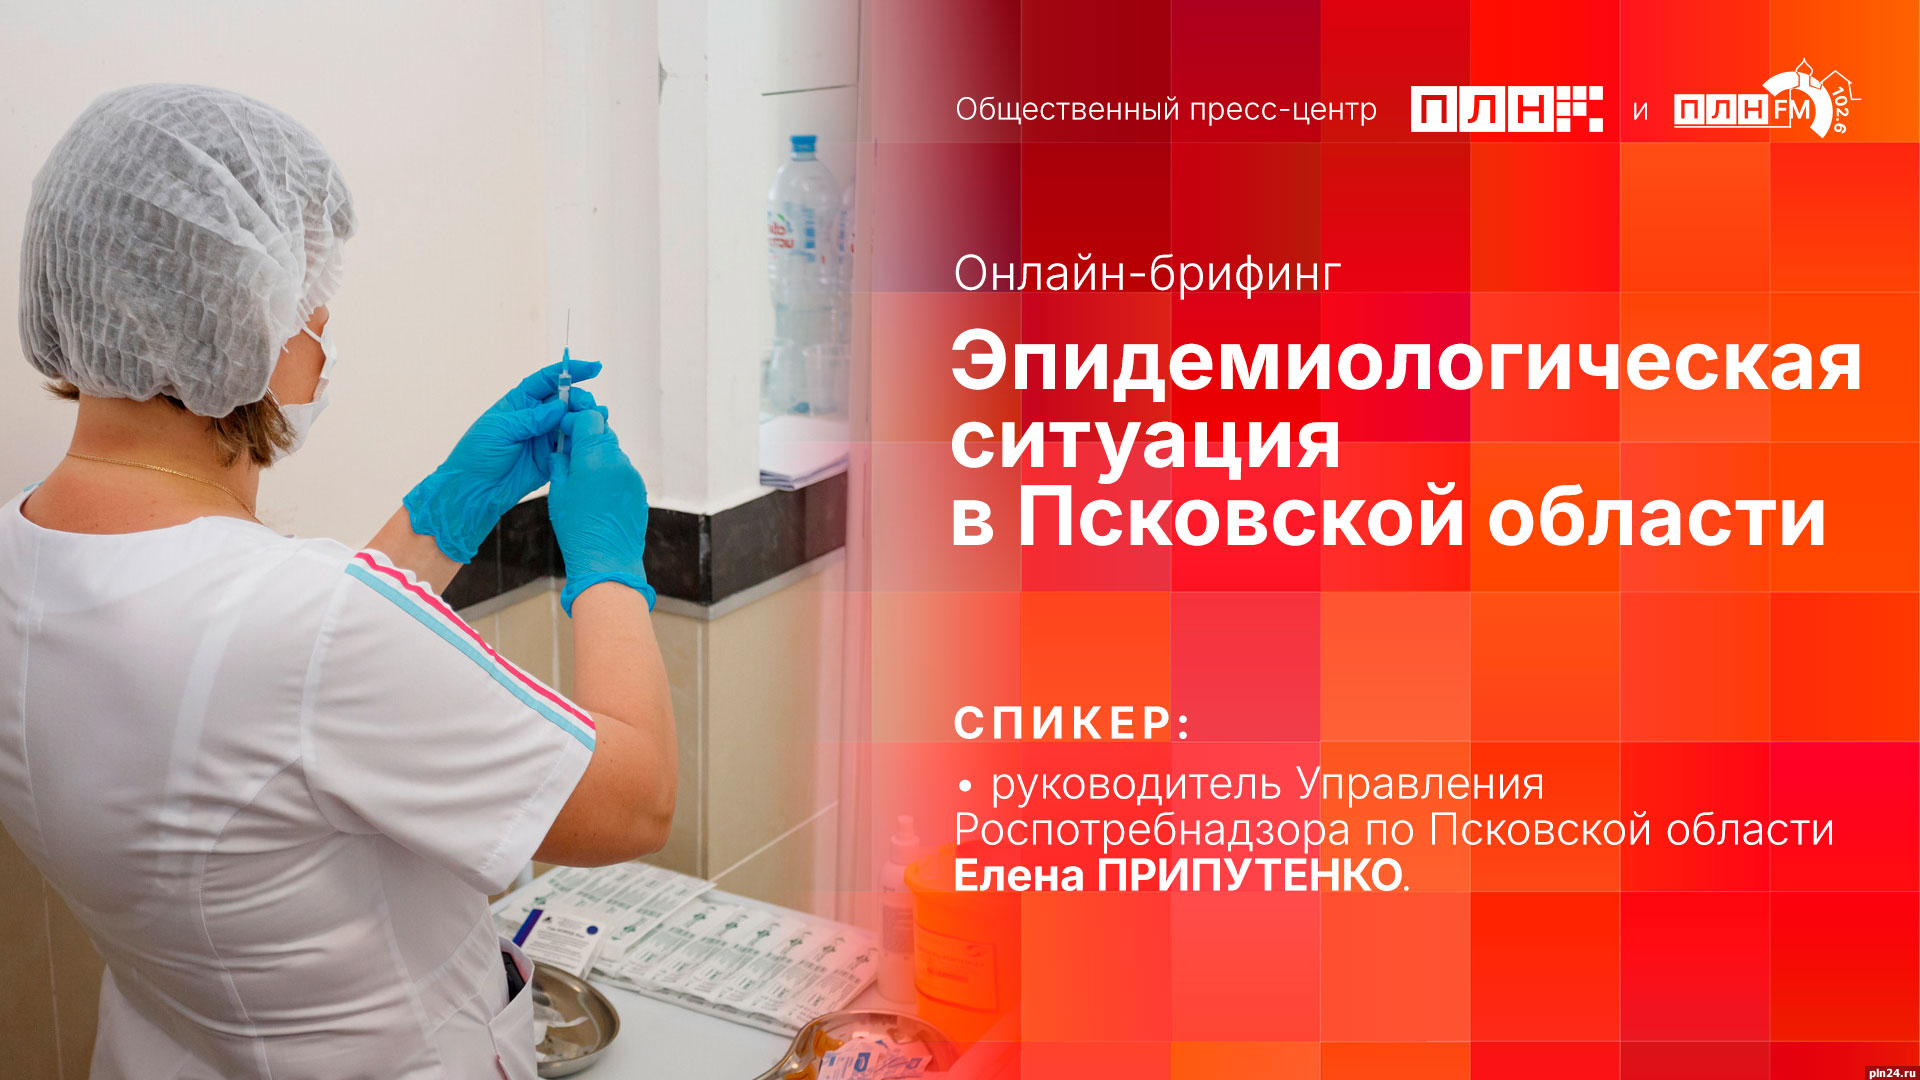 Начинается видеотрансляция онлайн-брифинга об эпидемиологической ситуации в Псковской области